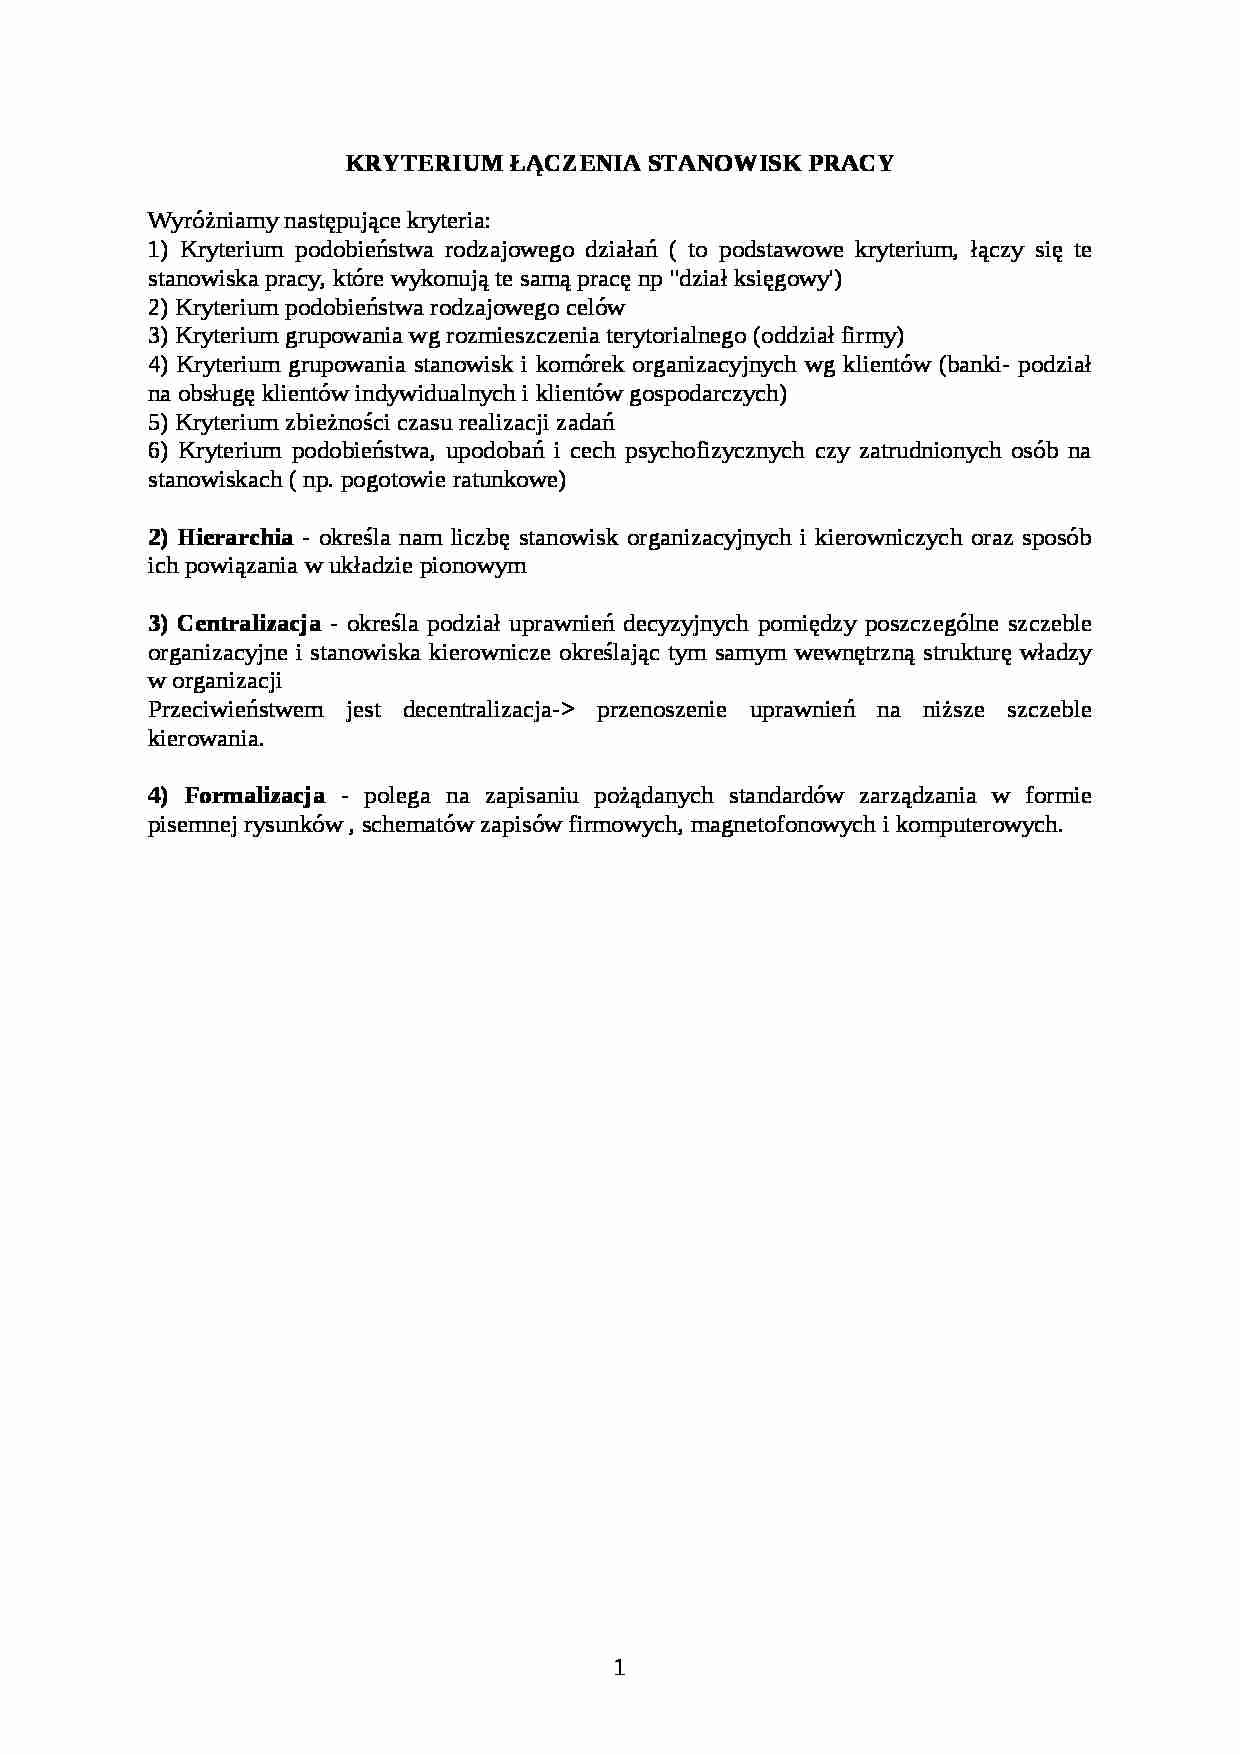 Kryterium łączenia stanowiska pracy -  omówienie - strona 1